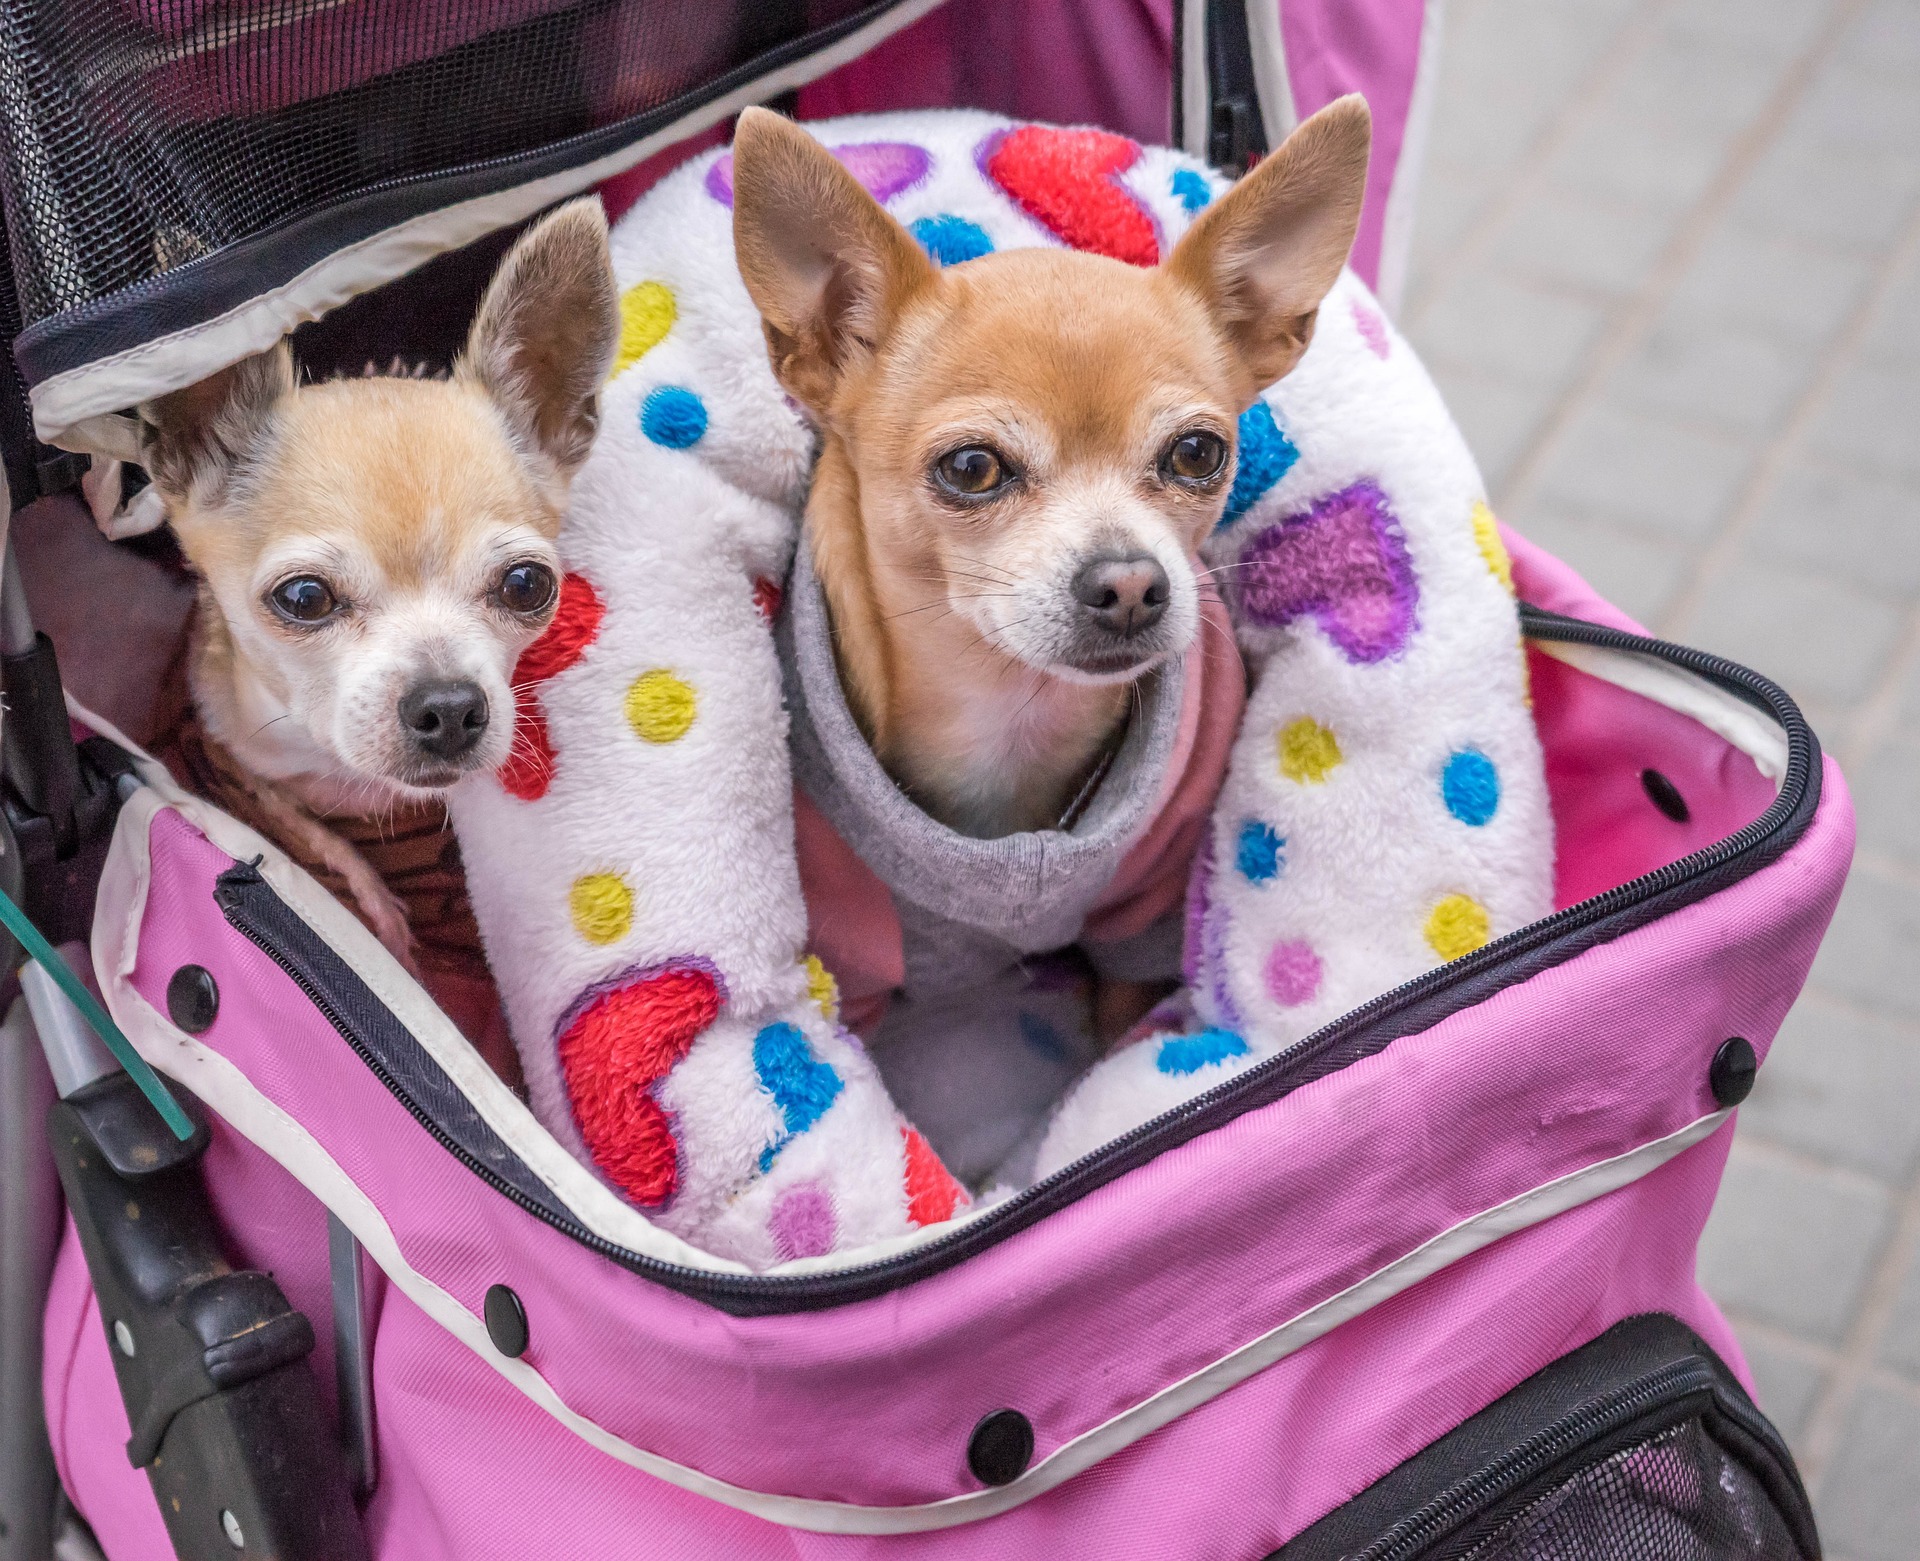 Bilden visar två hundar i en cykelkorg. Hunddagis pris kan du enkelt få genom att ansöka om hunddagis online i Stockholm.